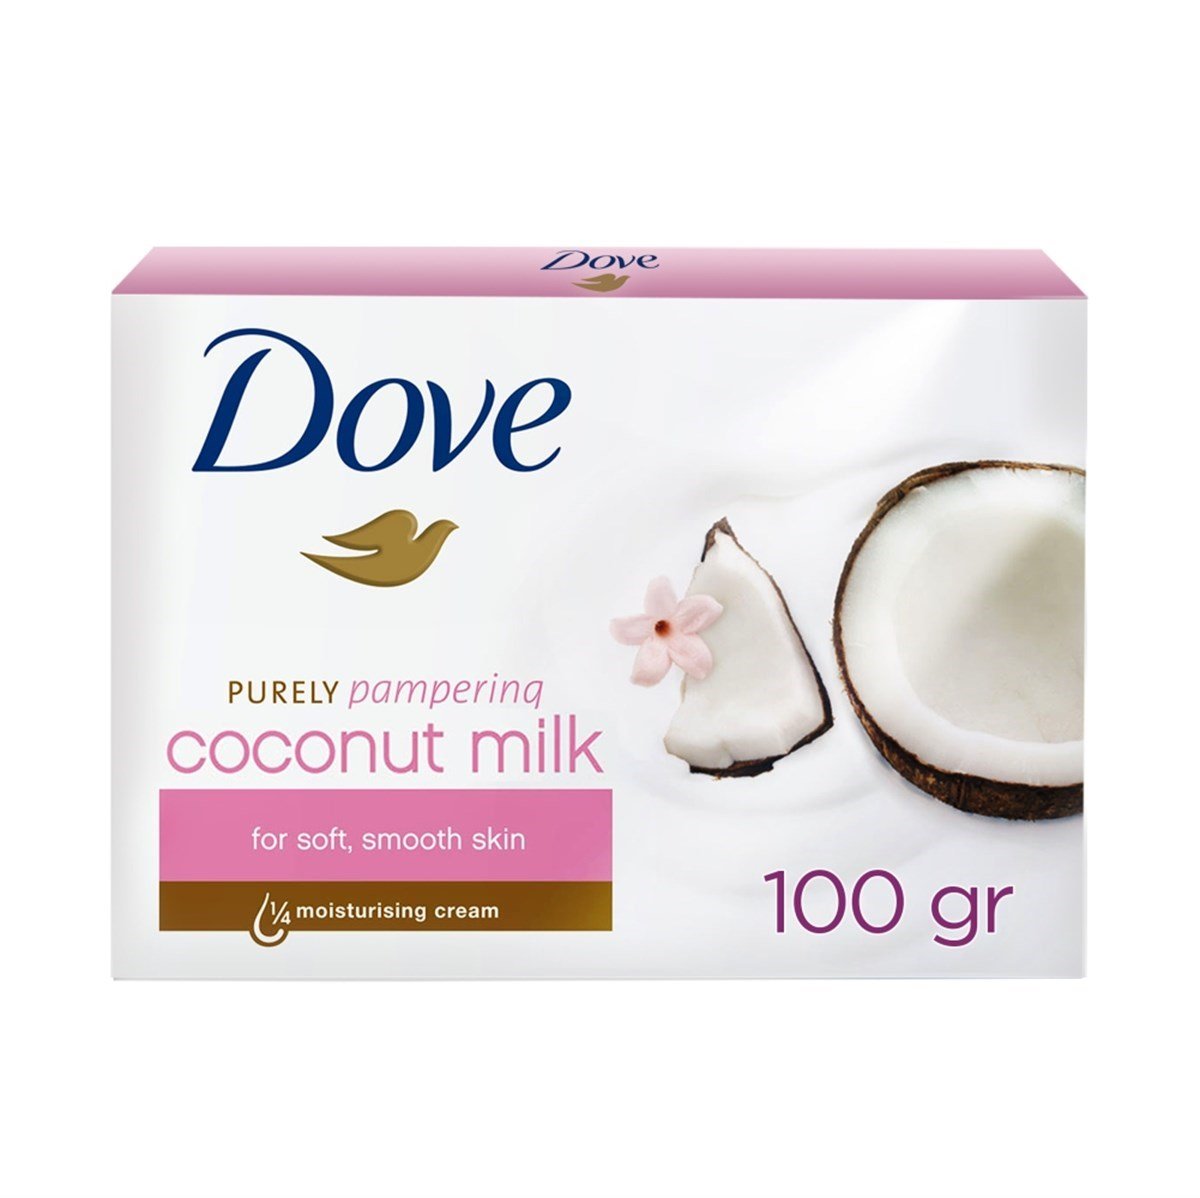 Dove Sabun Coconut Milk 100 gr DepoEczanem.com | Dermokozmetik Cilt & Vücut  Bakımı, Vitamin & Mineral – Takviye Edici Gıda ve Reçetesiz Sağlık Ürünleri